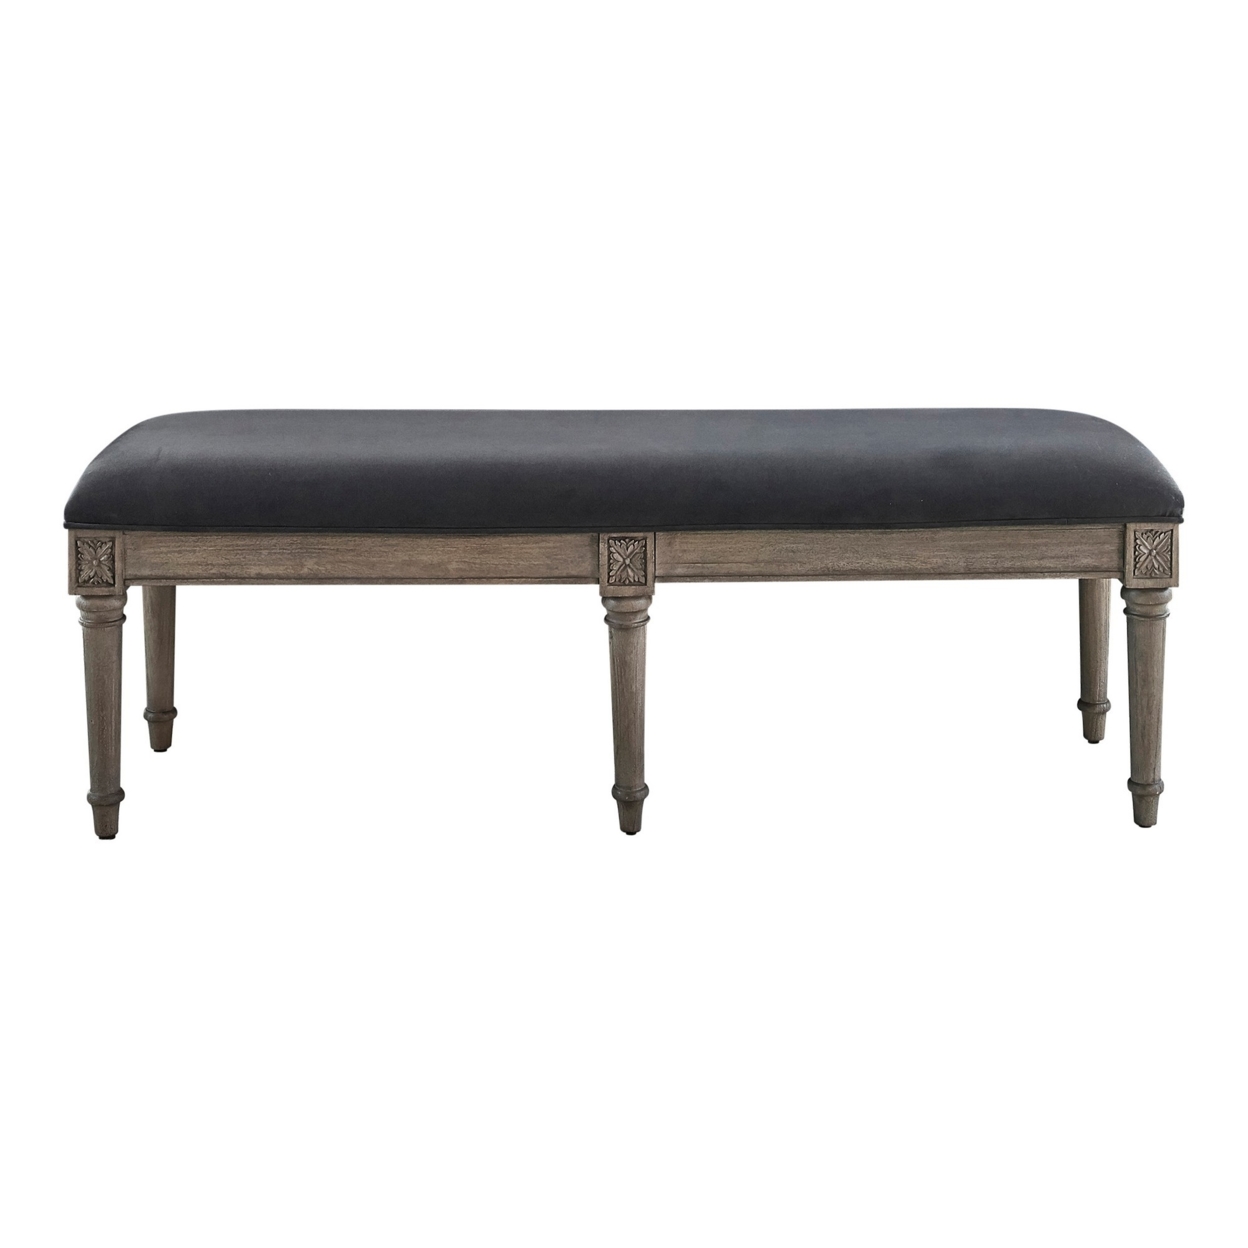 Bench With Velvet Upholstered Seat And 6 Legged Support, Gray- Saltoro Sherpi